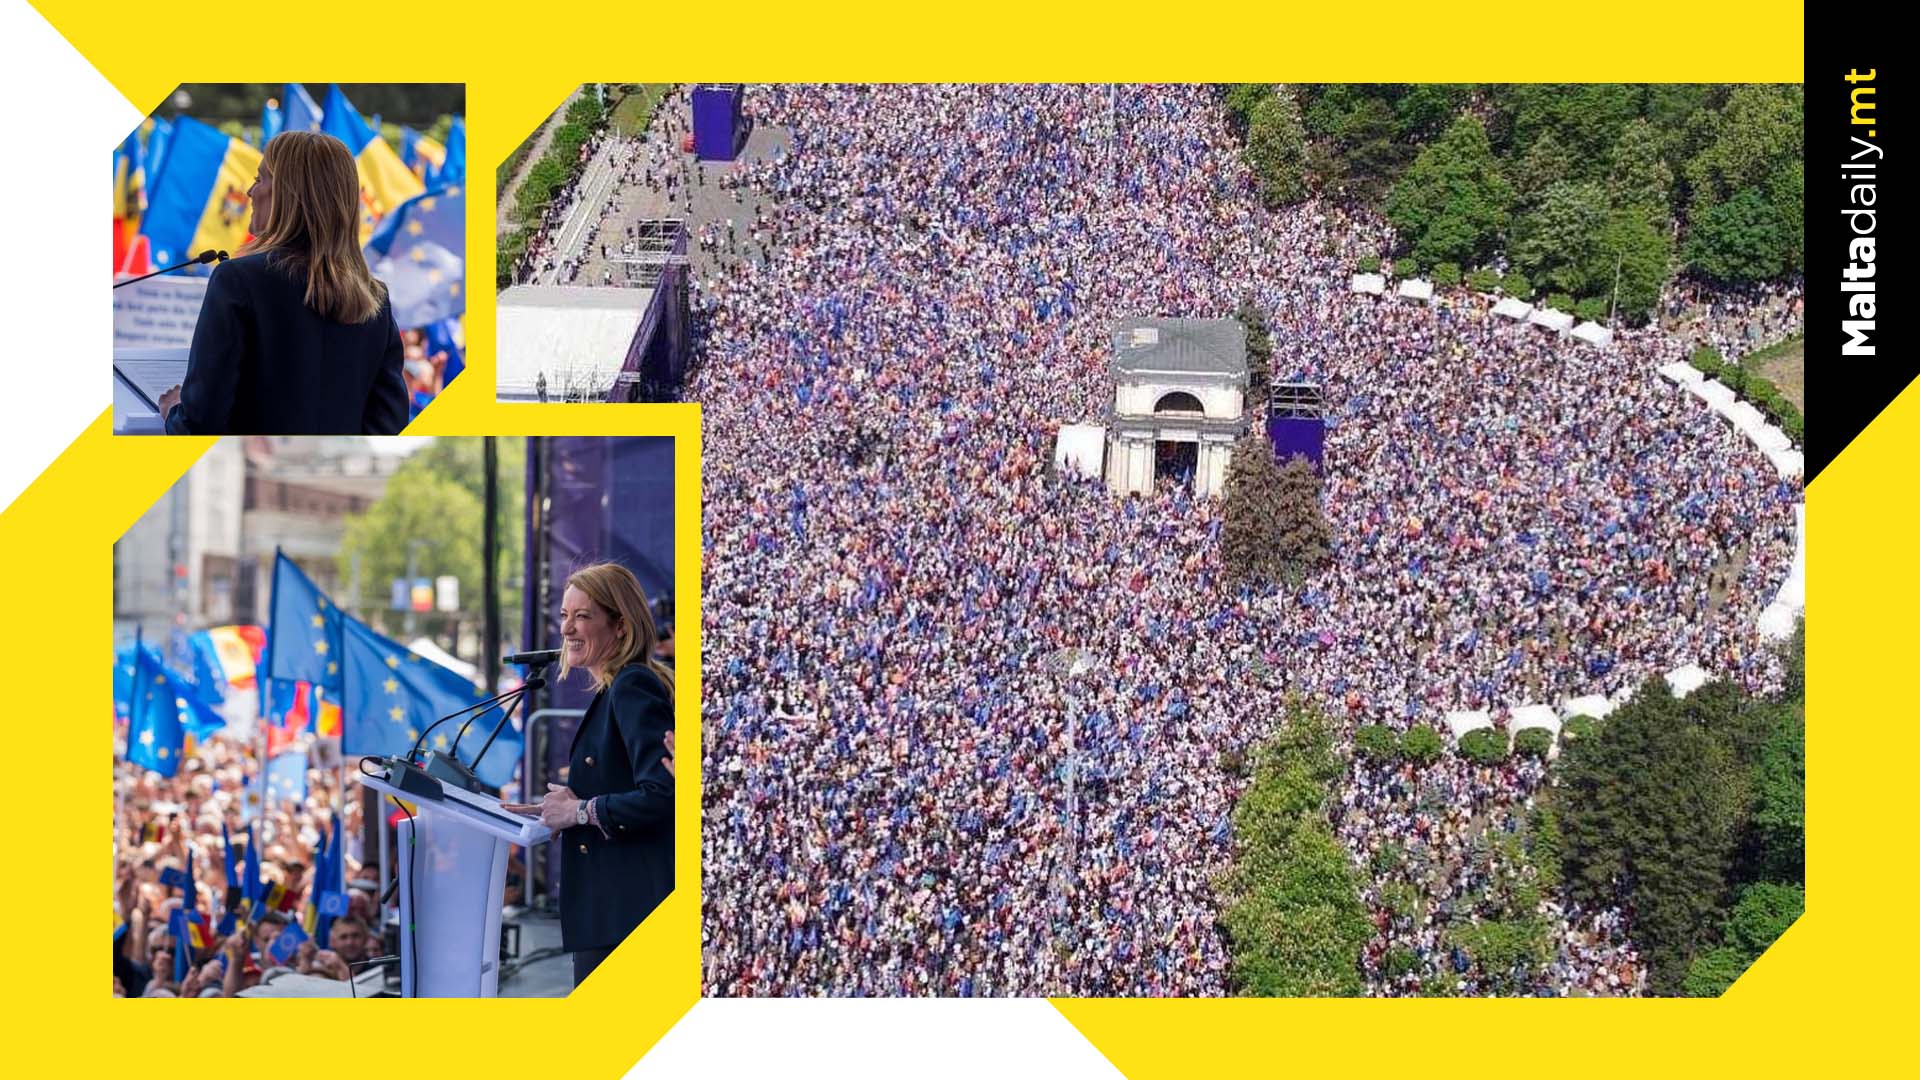 Over 75,000 turn up for Metsola's Moldova speech